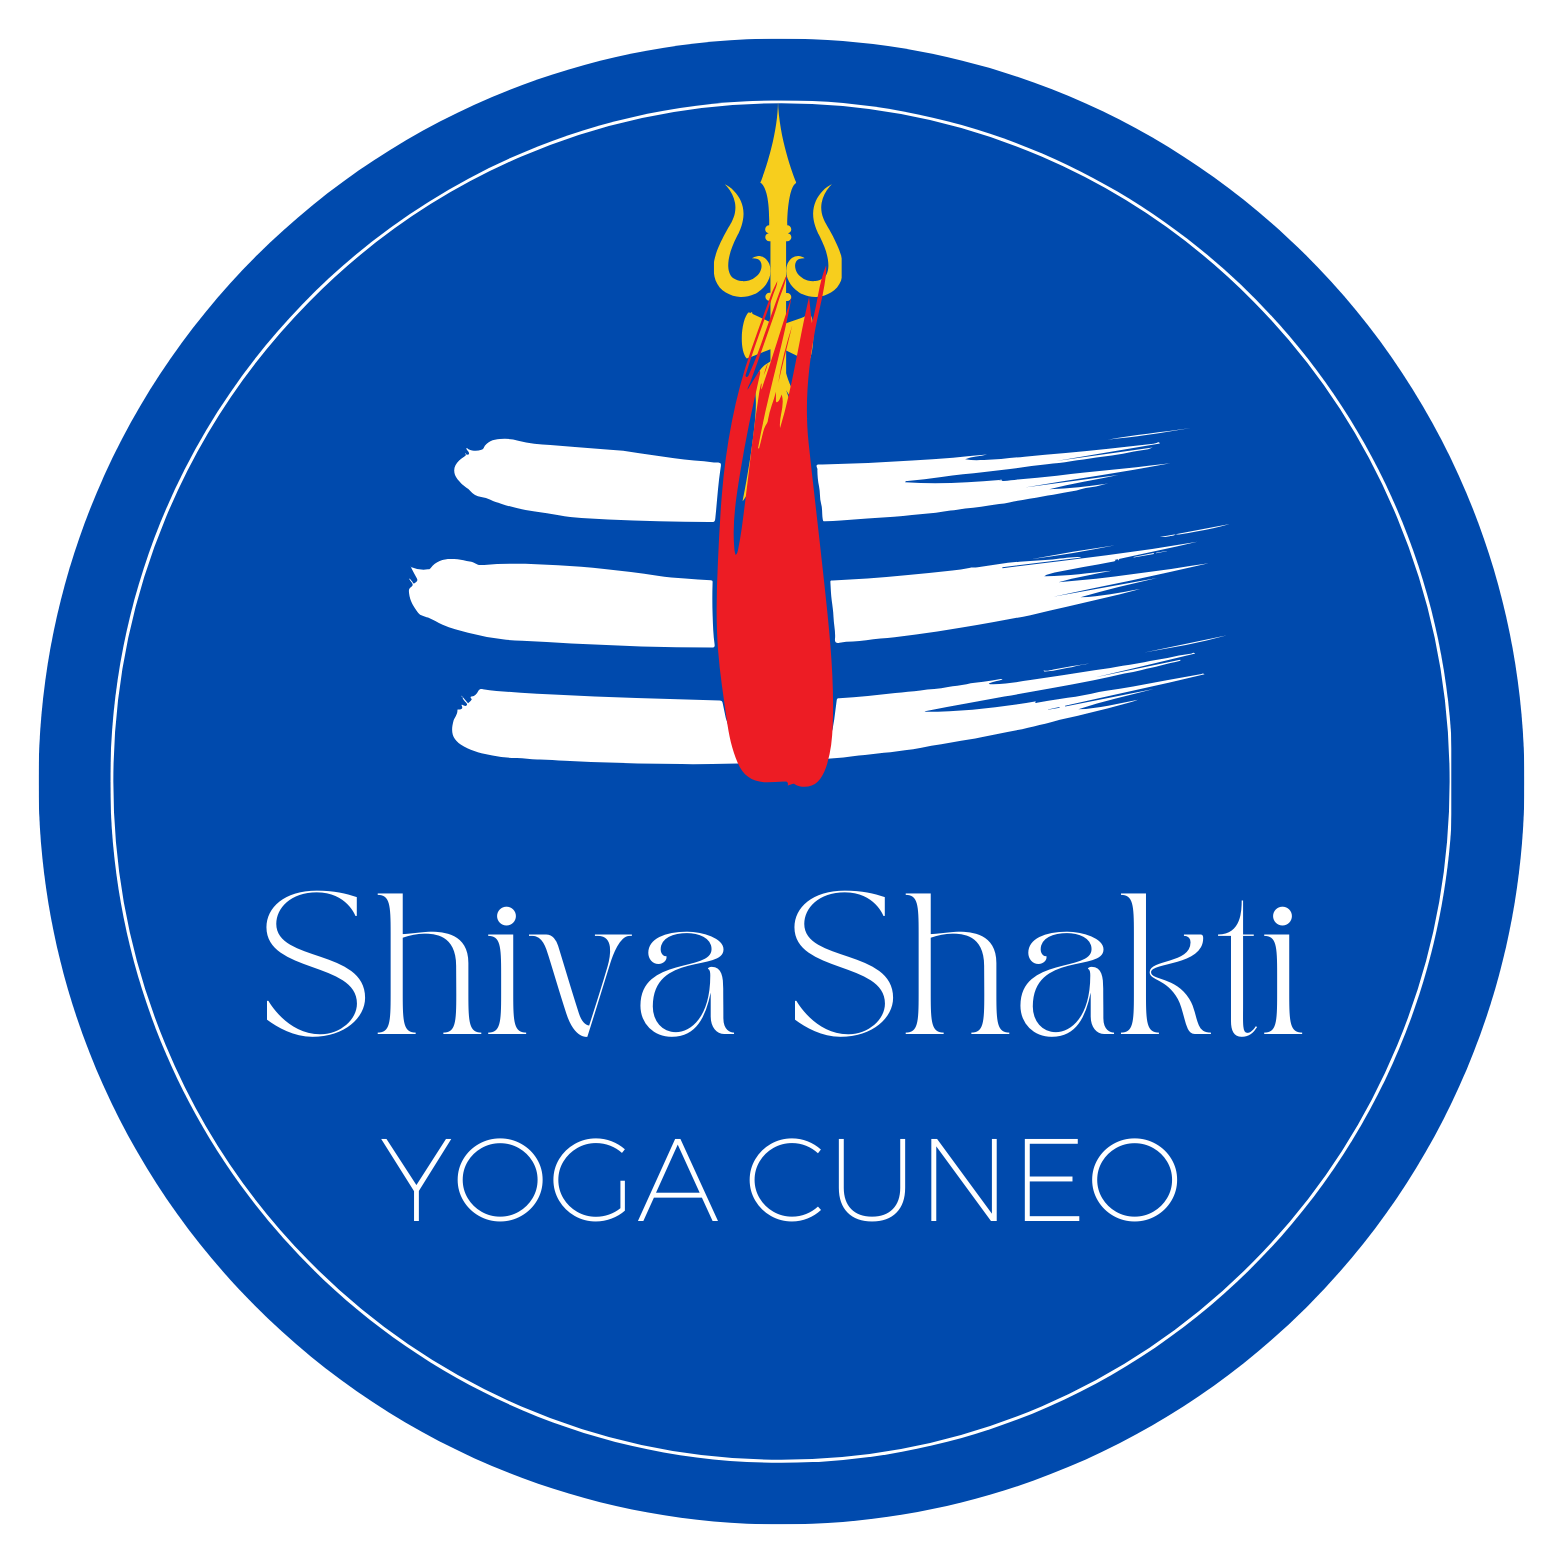 Shiva Shakti Yoga Cuneo